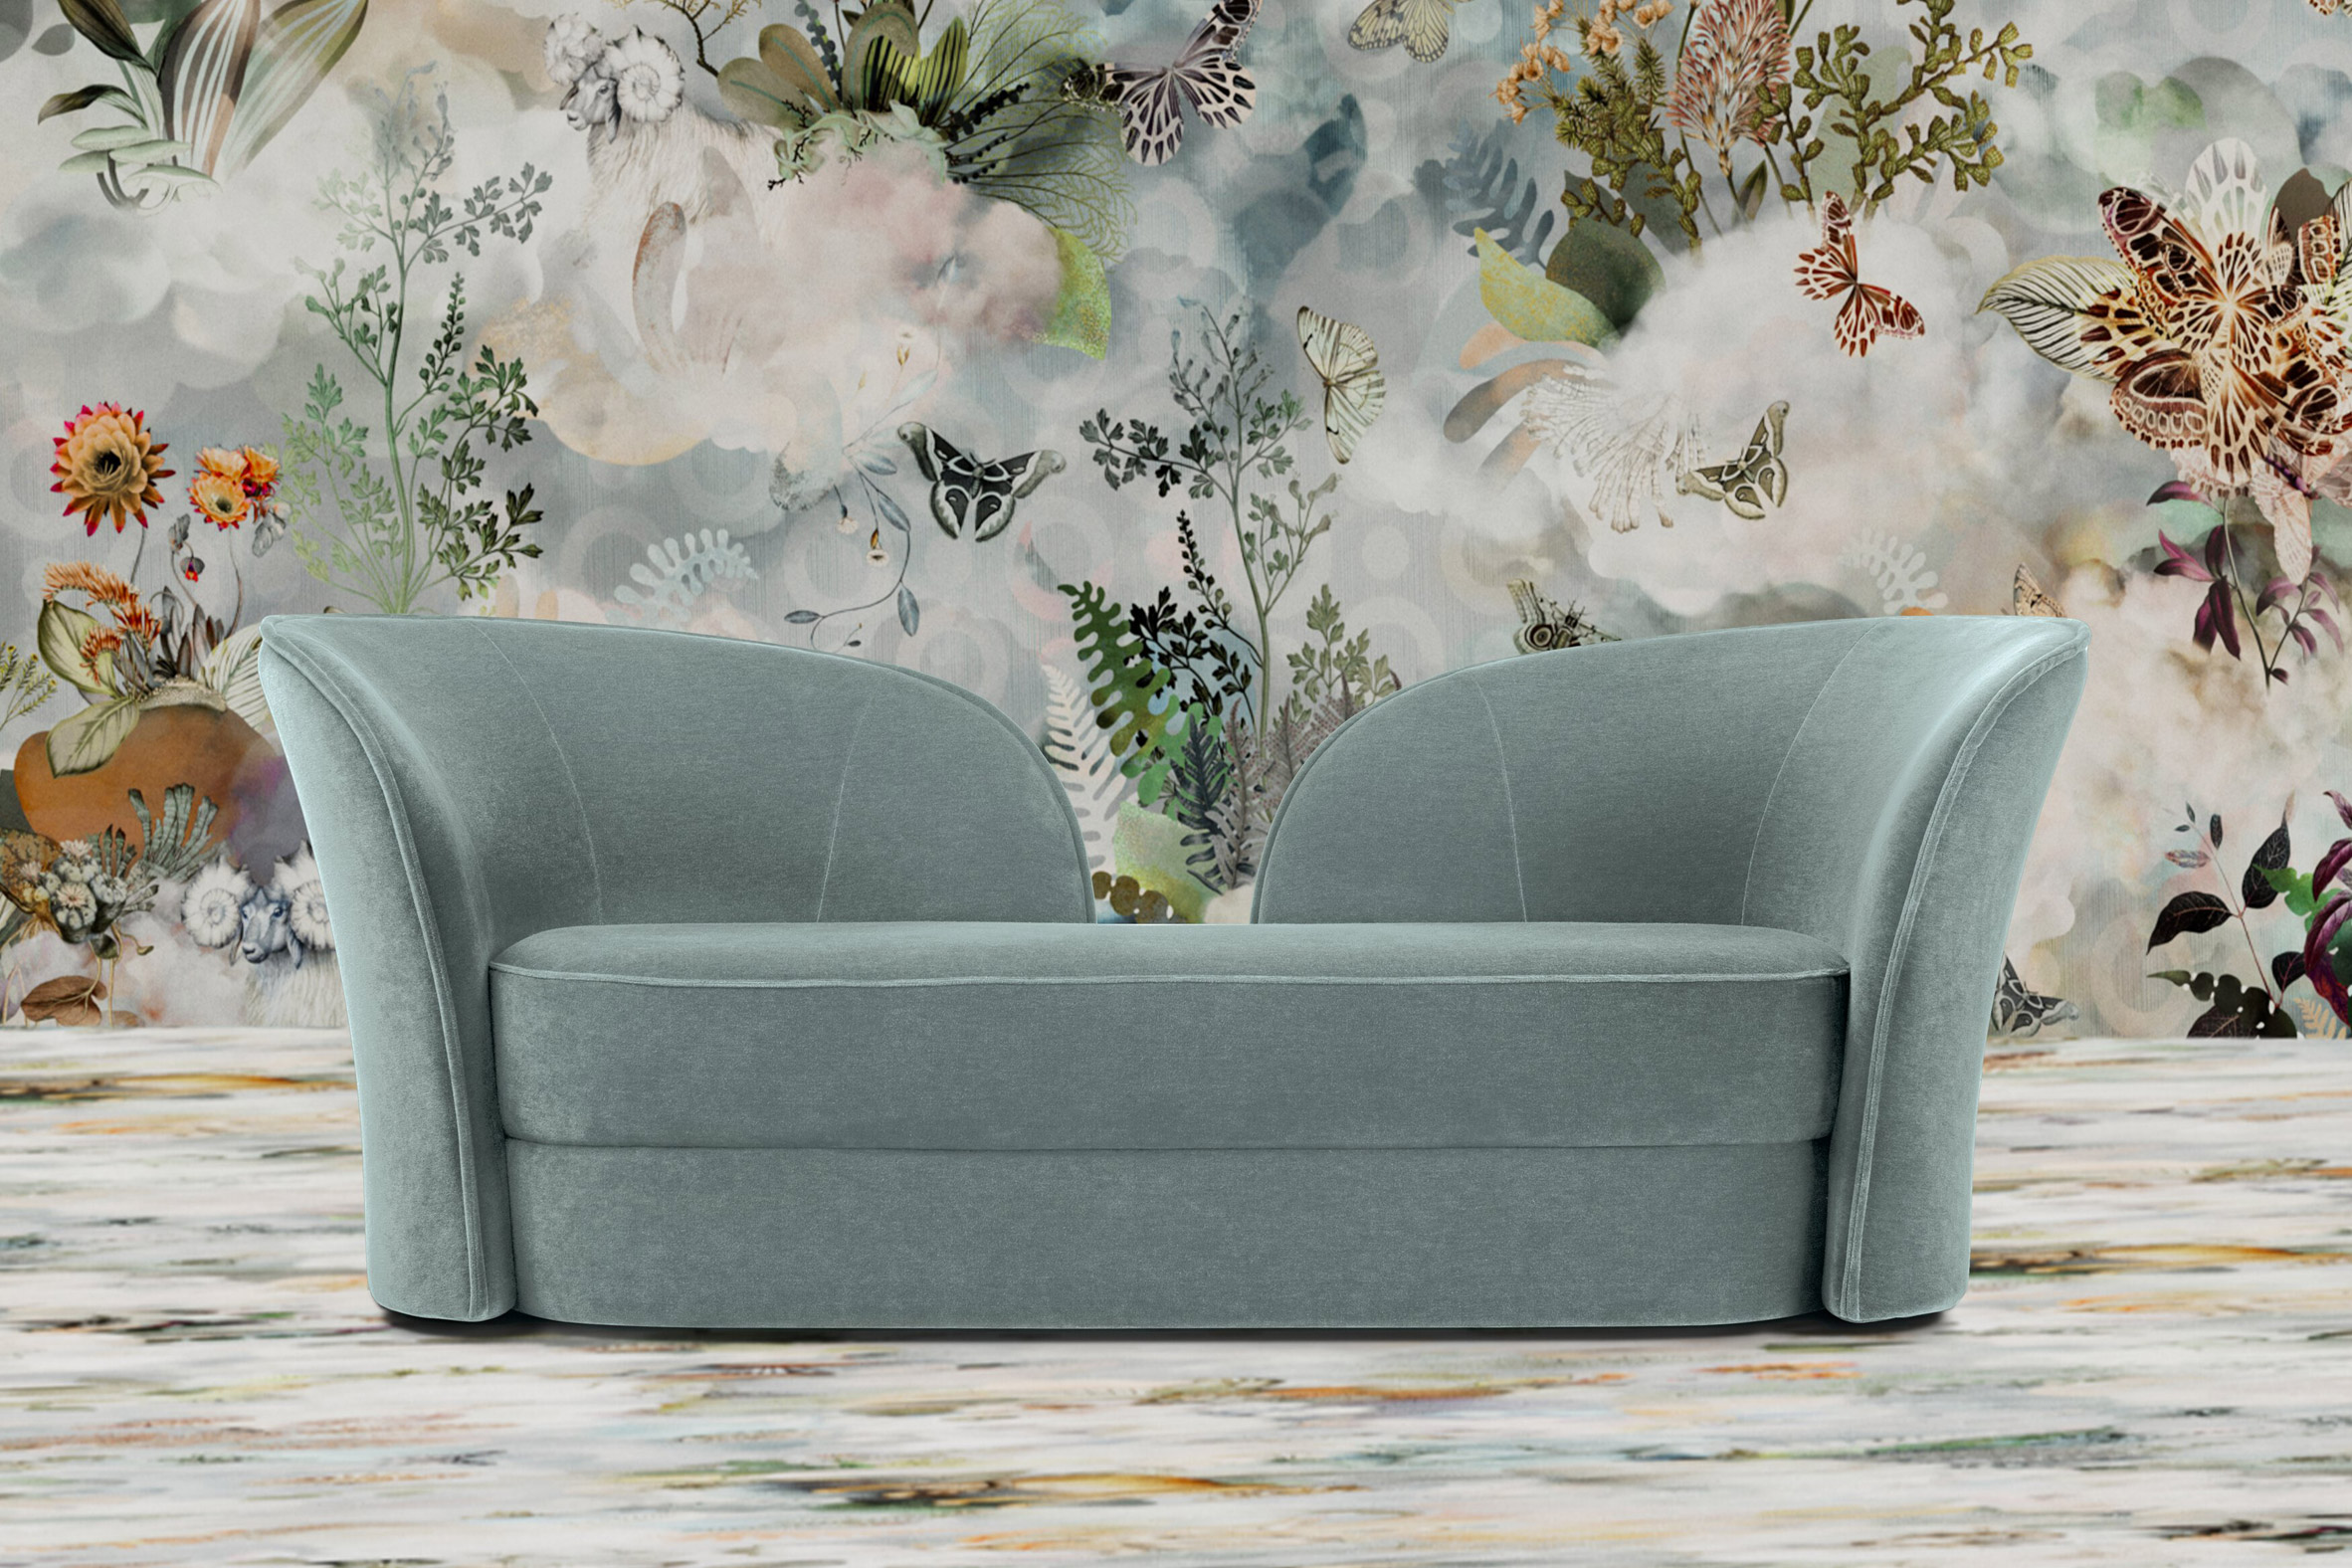 Aldora sofa by Cristina Celestino for Moooi